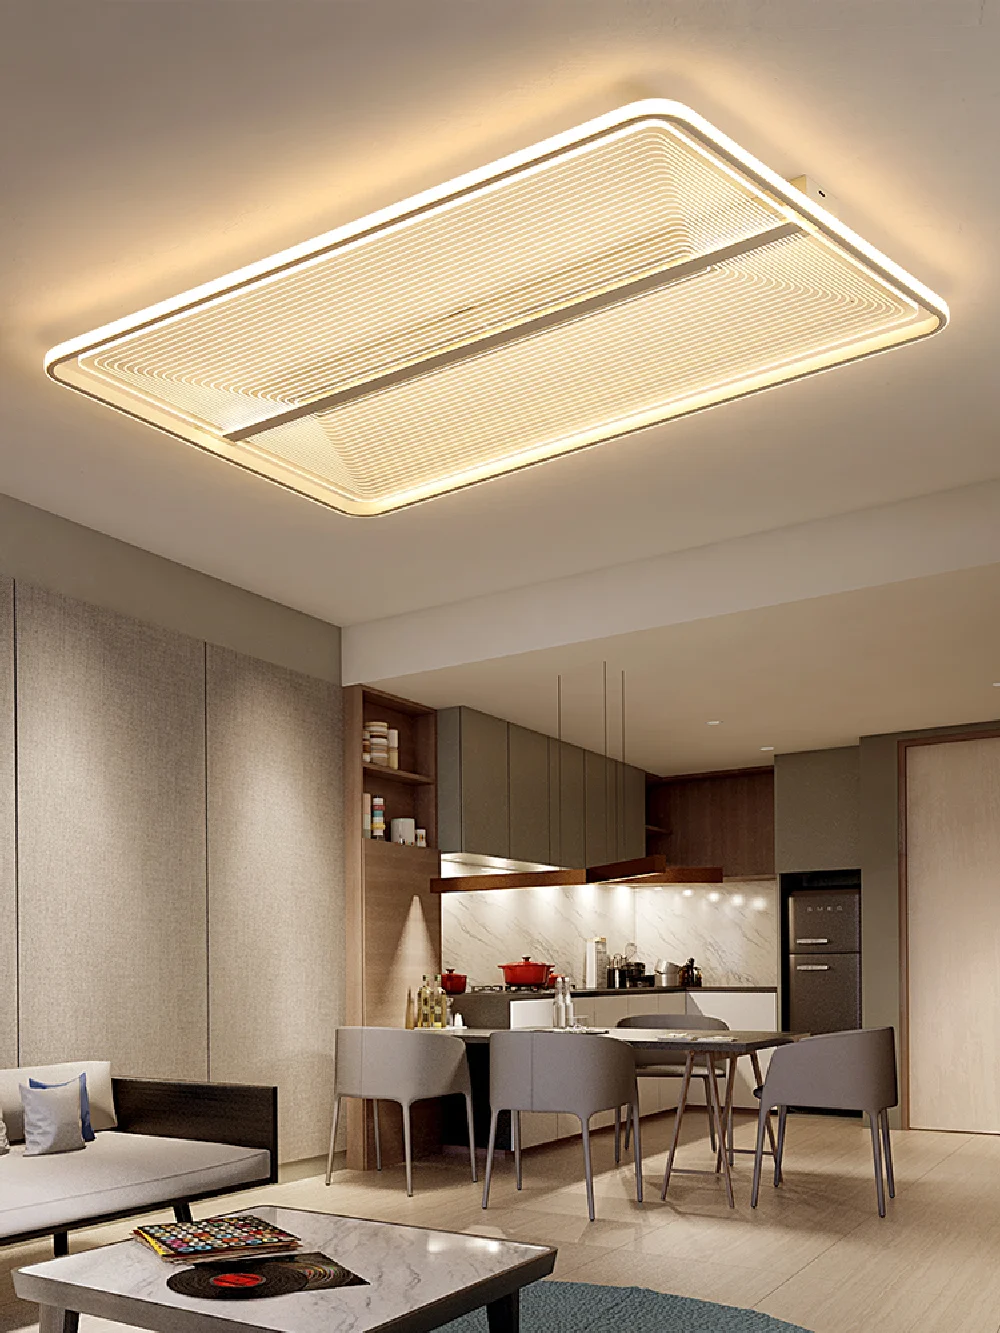 

Remote Dimming LED Ceiling Light For Living Room Restaurant Bderoom Ceiling Lamp Modern White Simple Panel Lights AC90V - 260V